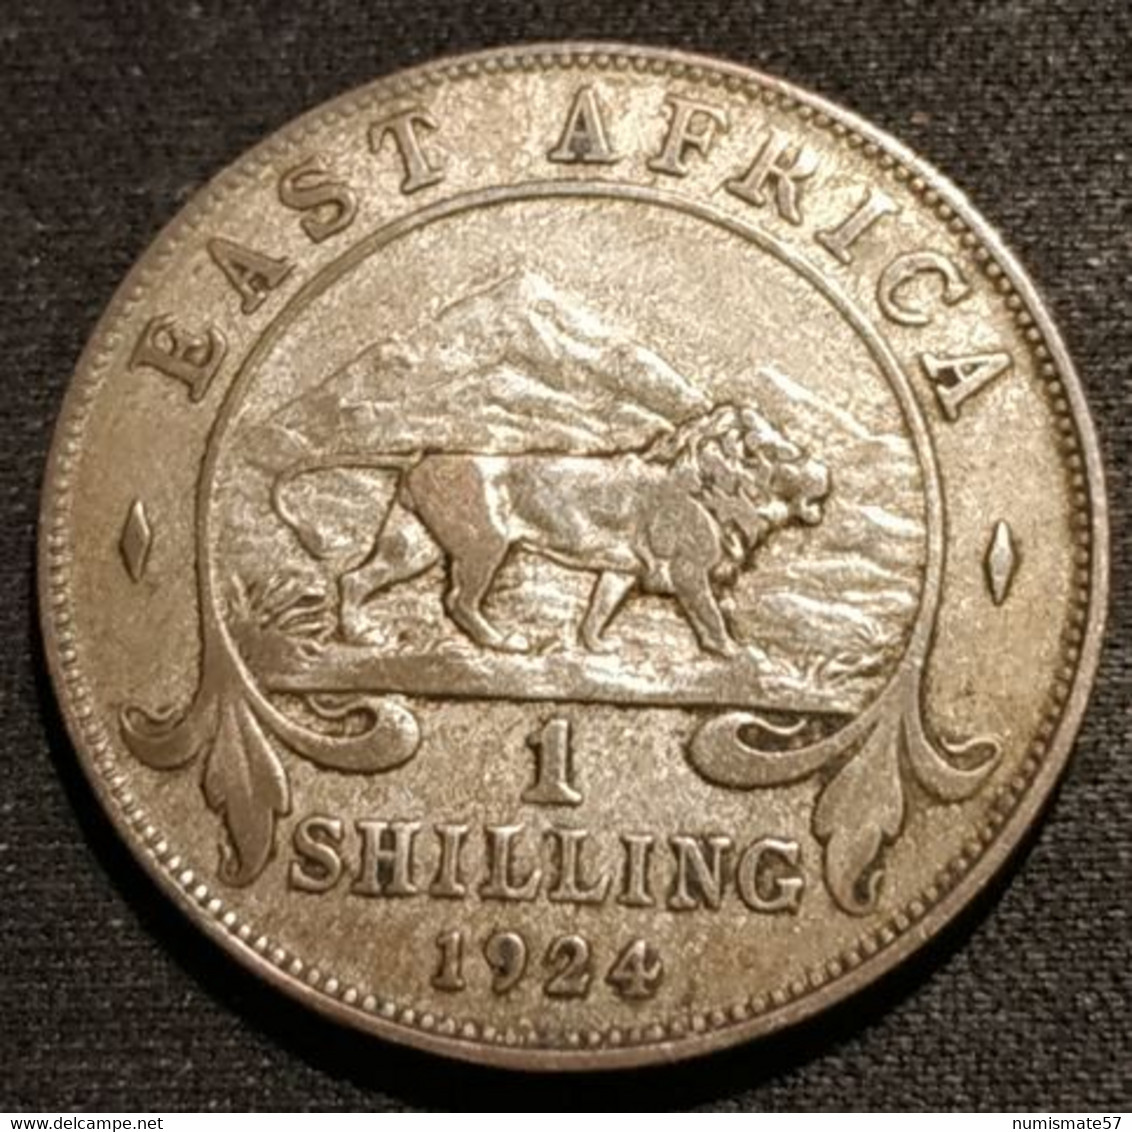 AFRIQUE DE L'EST - EAST AFRICA - 1 SHILLING 1924 - Argent - Silver - George V - KM 21 - Colonia Britannica